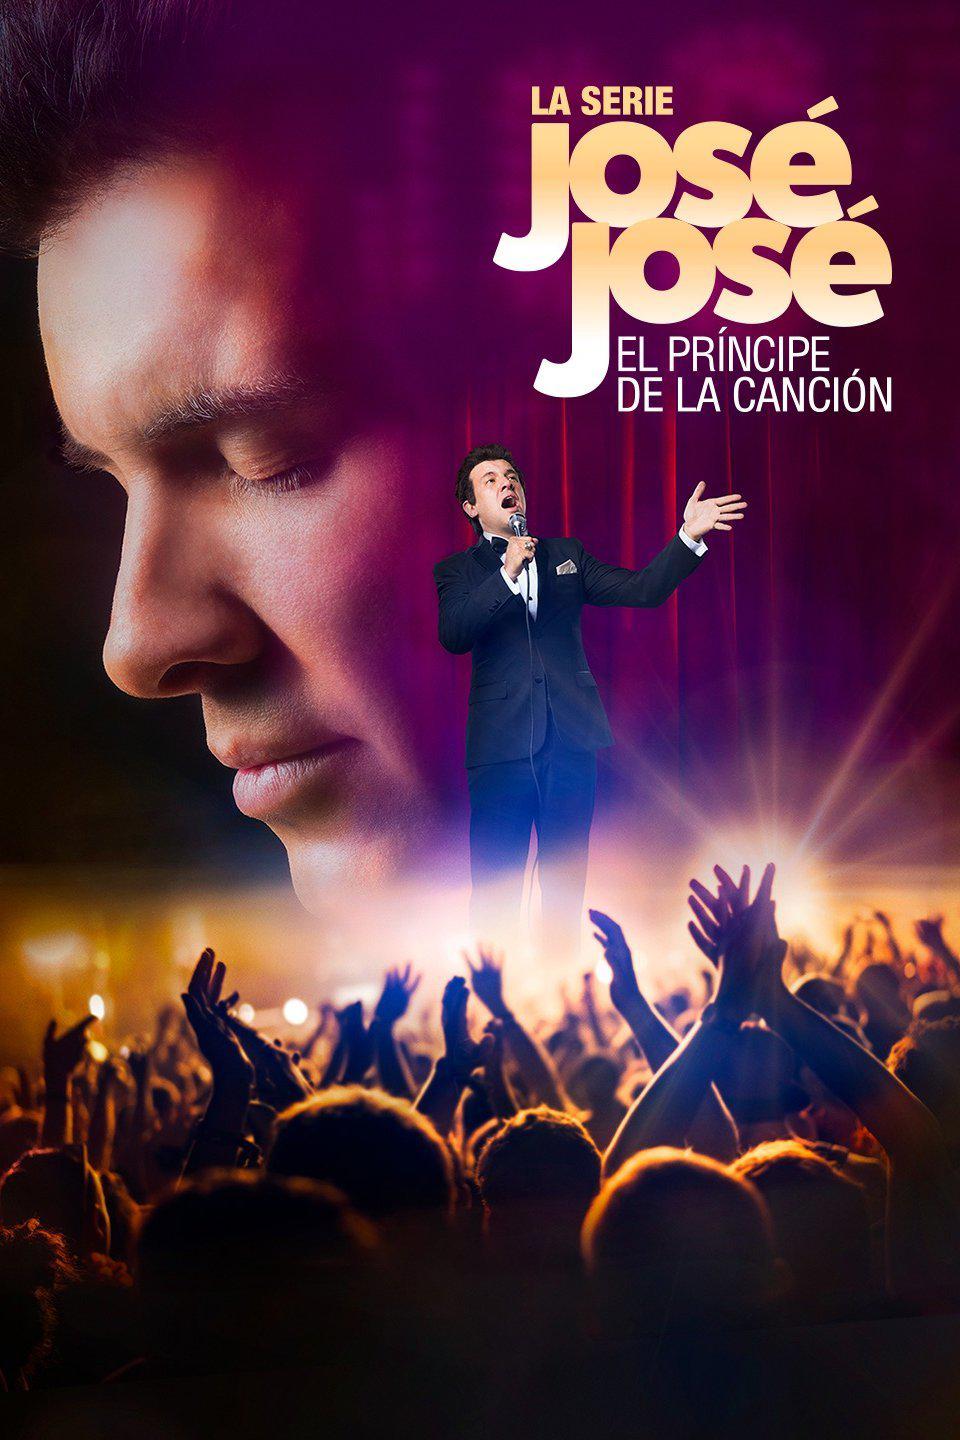 TV ratings for José José, El Príncipe De La Canción in France. Telemundo TV series